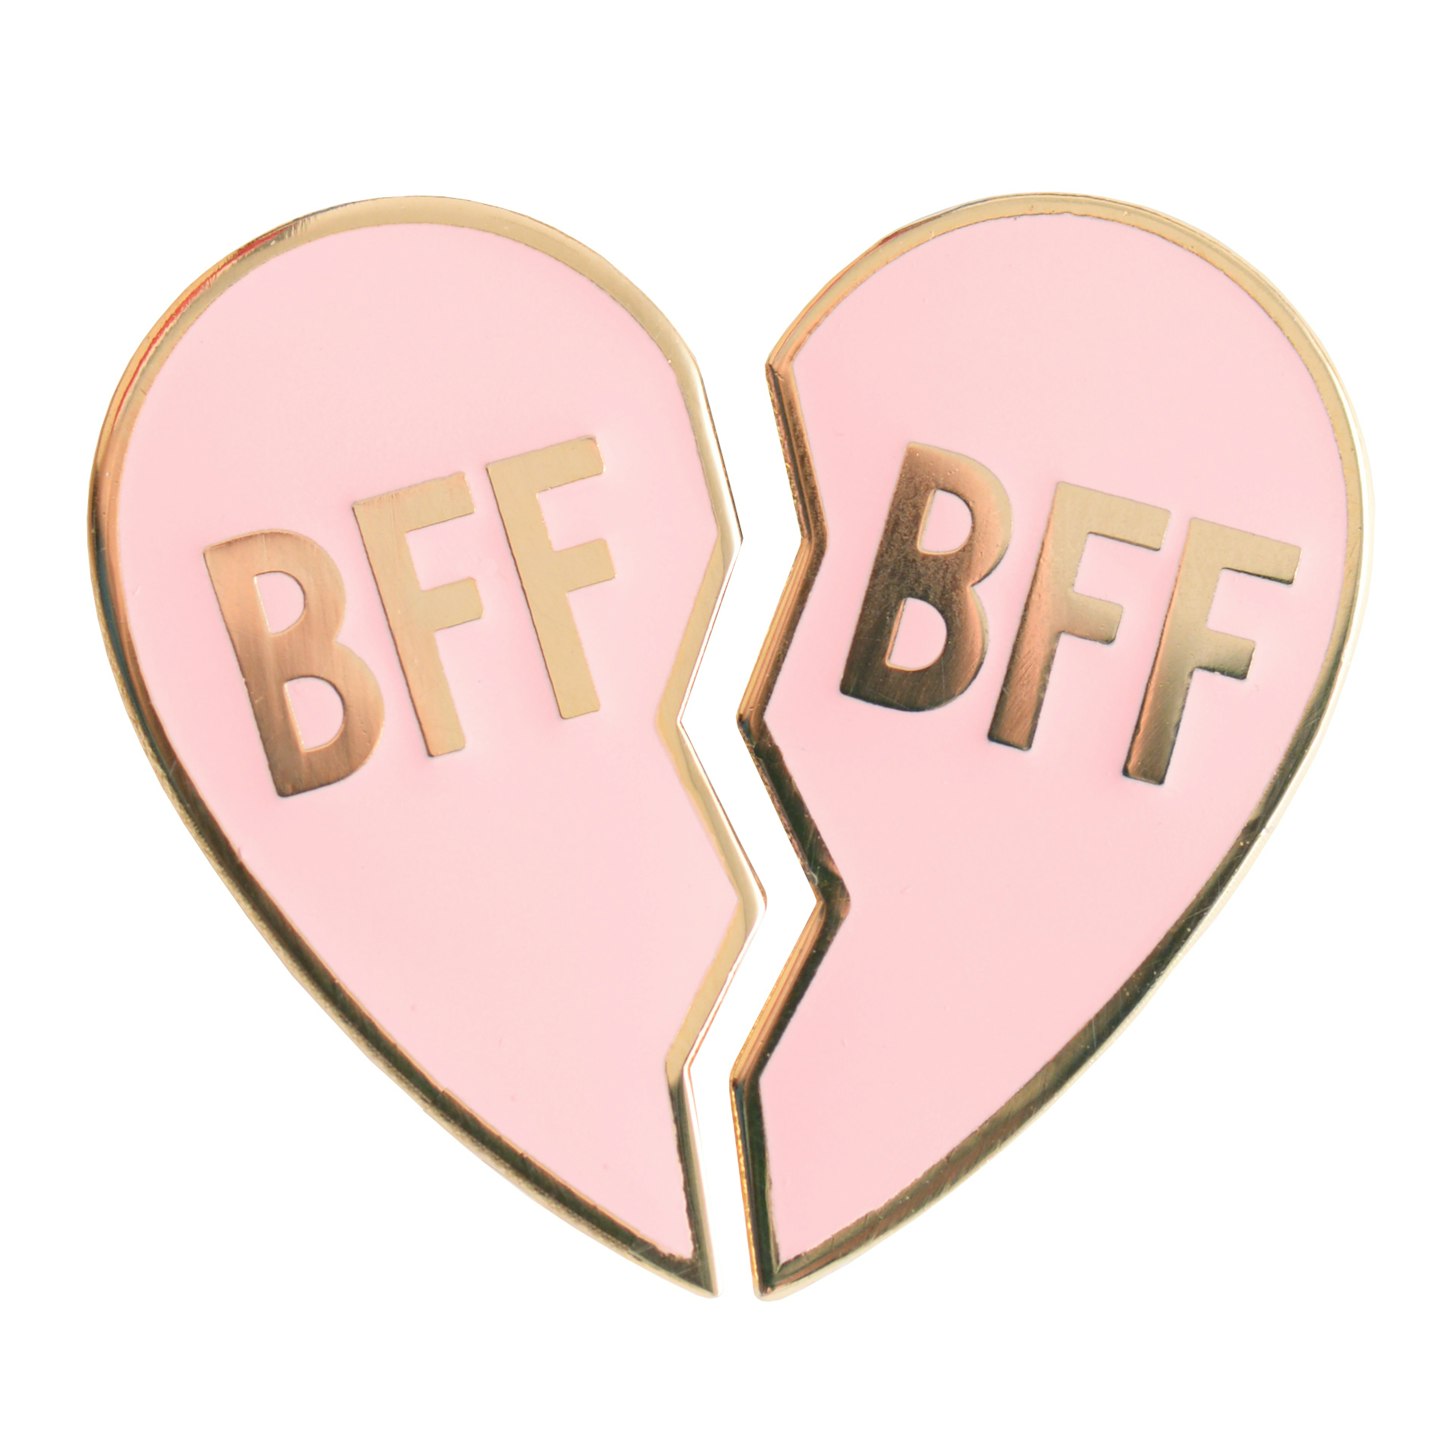 BFF pin badge